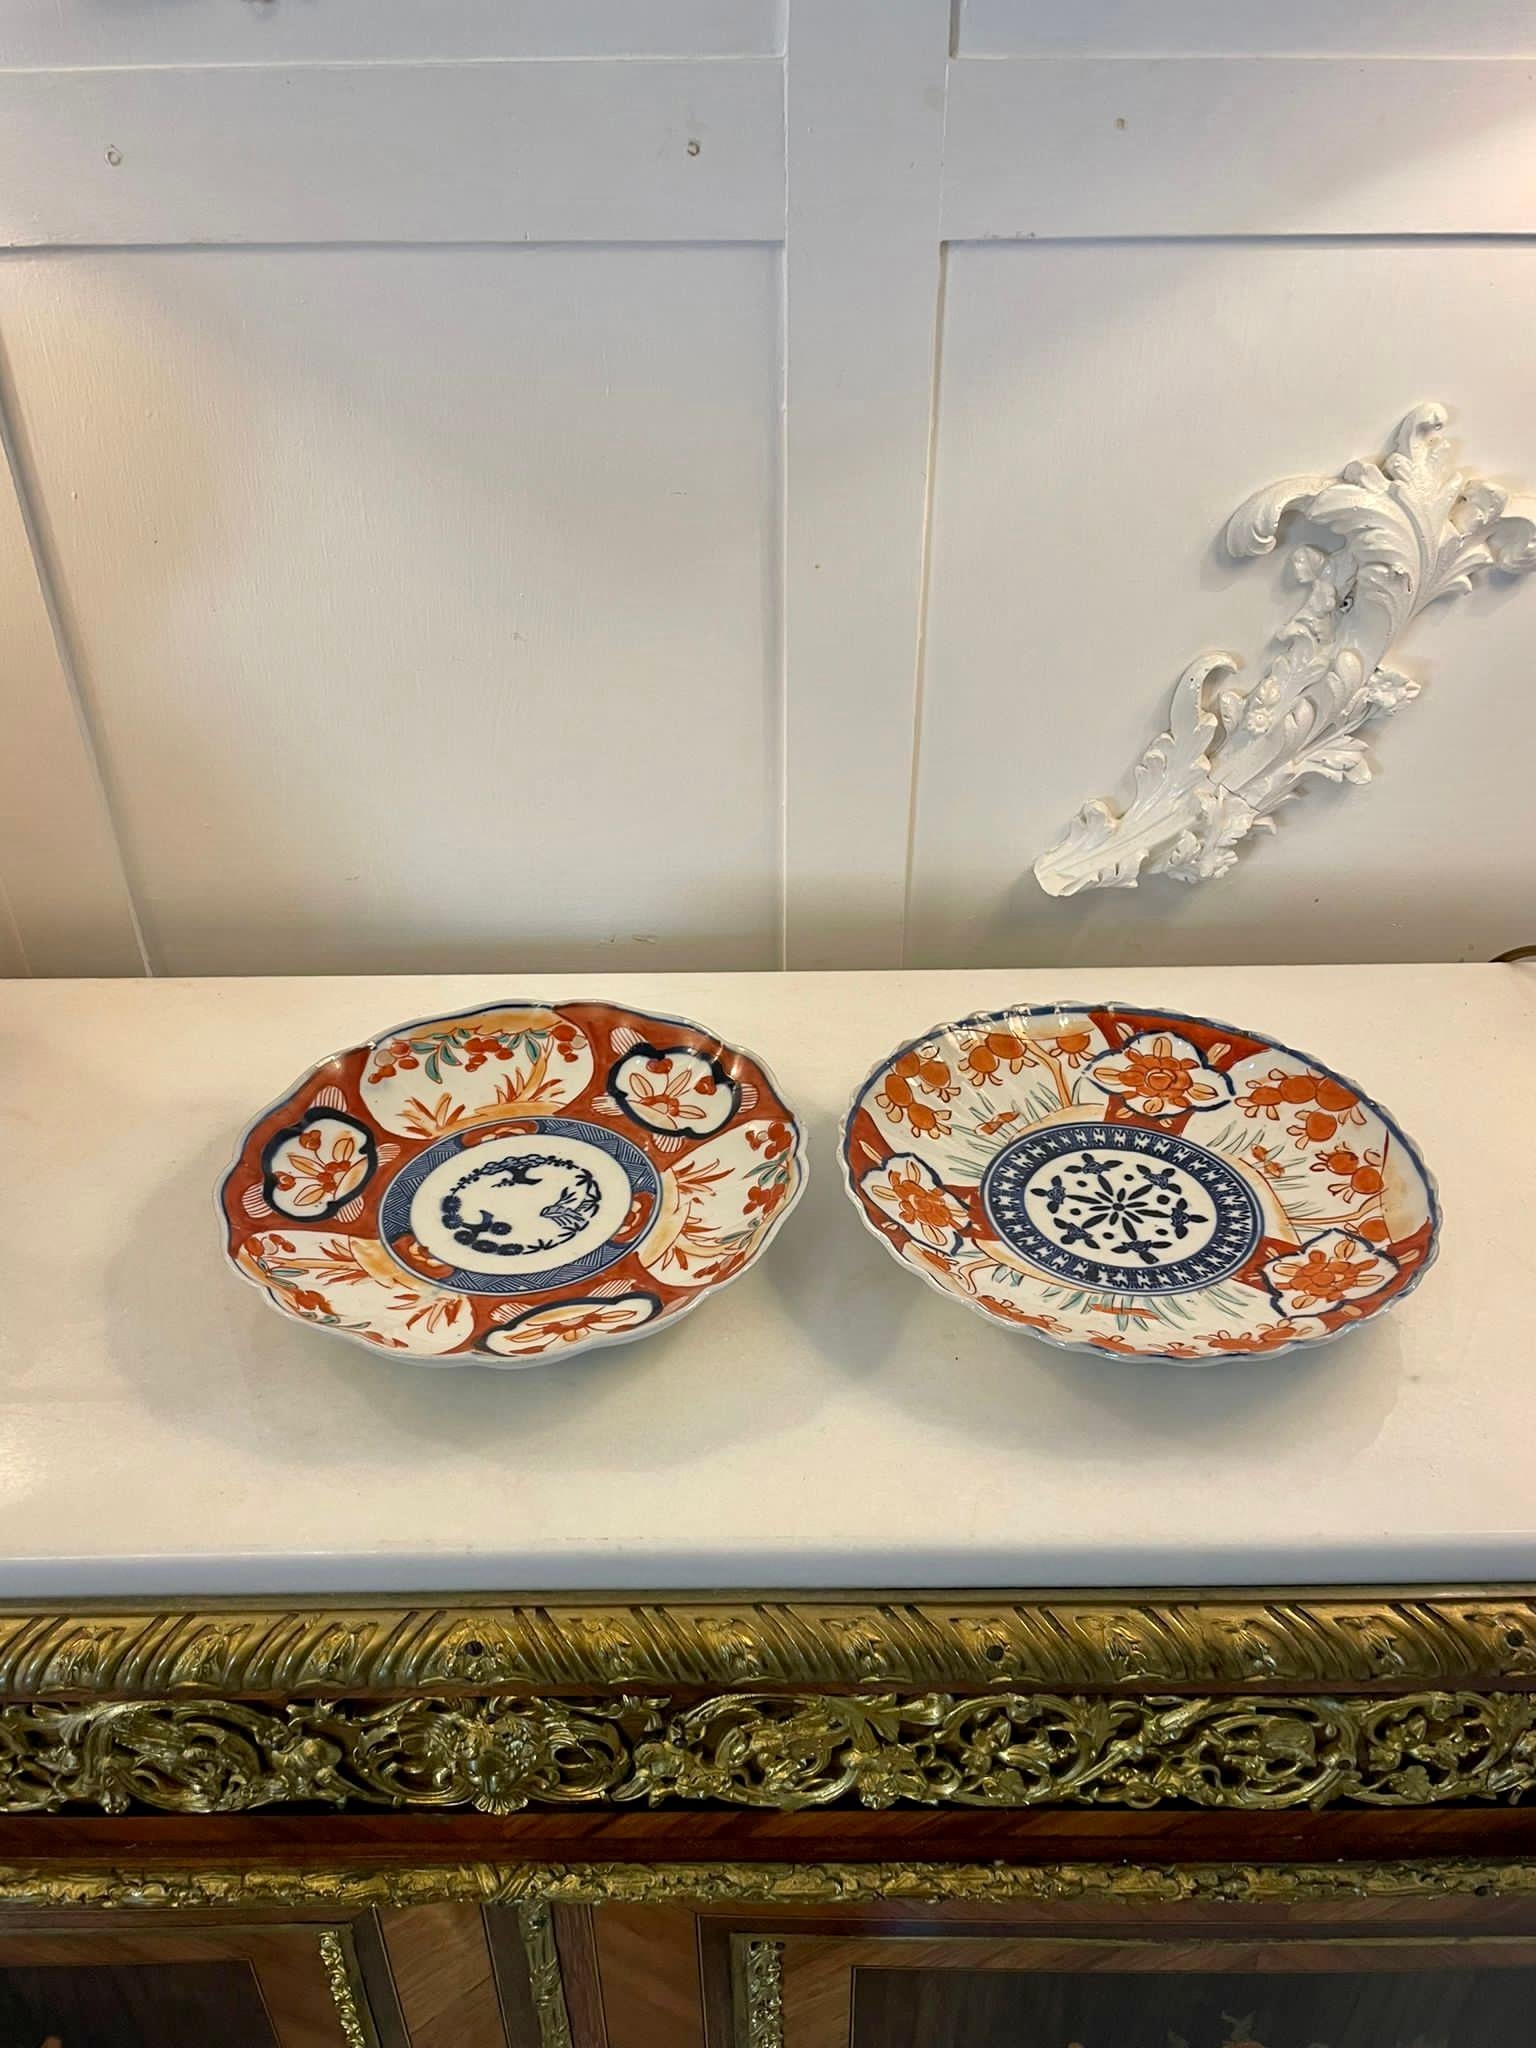 Zwei antike japanische Imari-Teller mit gewelltem Rand und wunderschönen handgemalten Tafeln in den Farben Rot, Blau, Weiß und Grün 


Wunderschöne Exemplare in perfektem Originalzustand


Abmessungen:
Höhe 3,5 cm Breite 22 cm x Tiefe 22